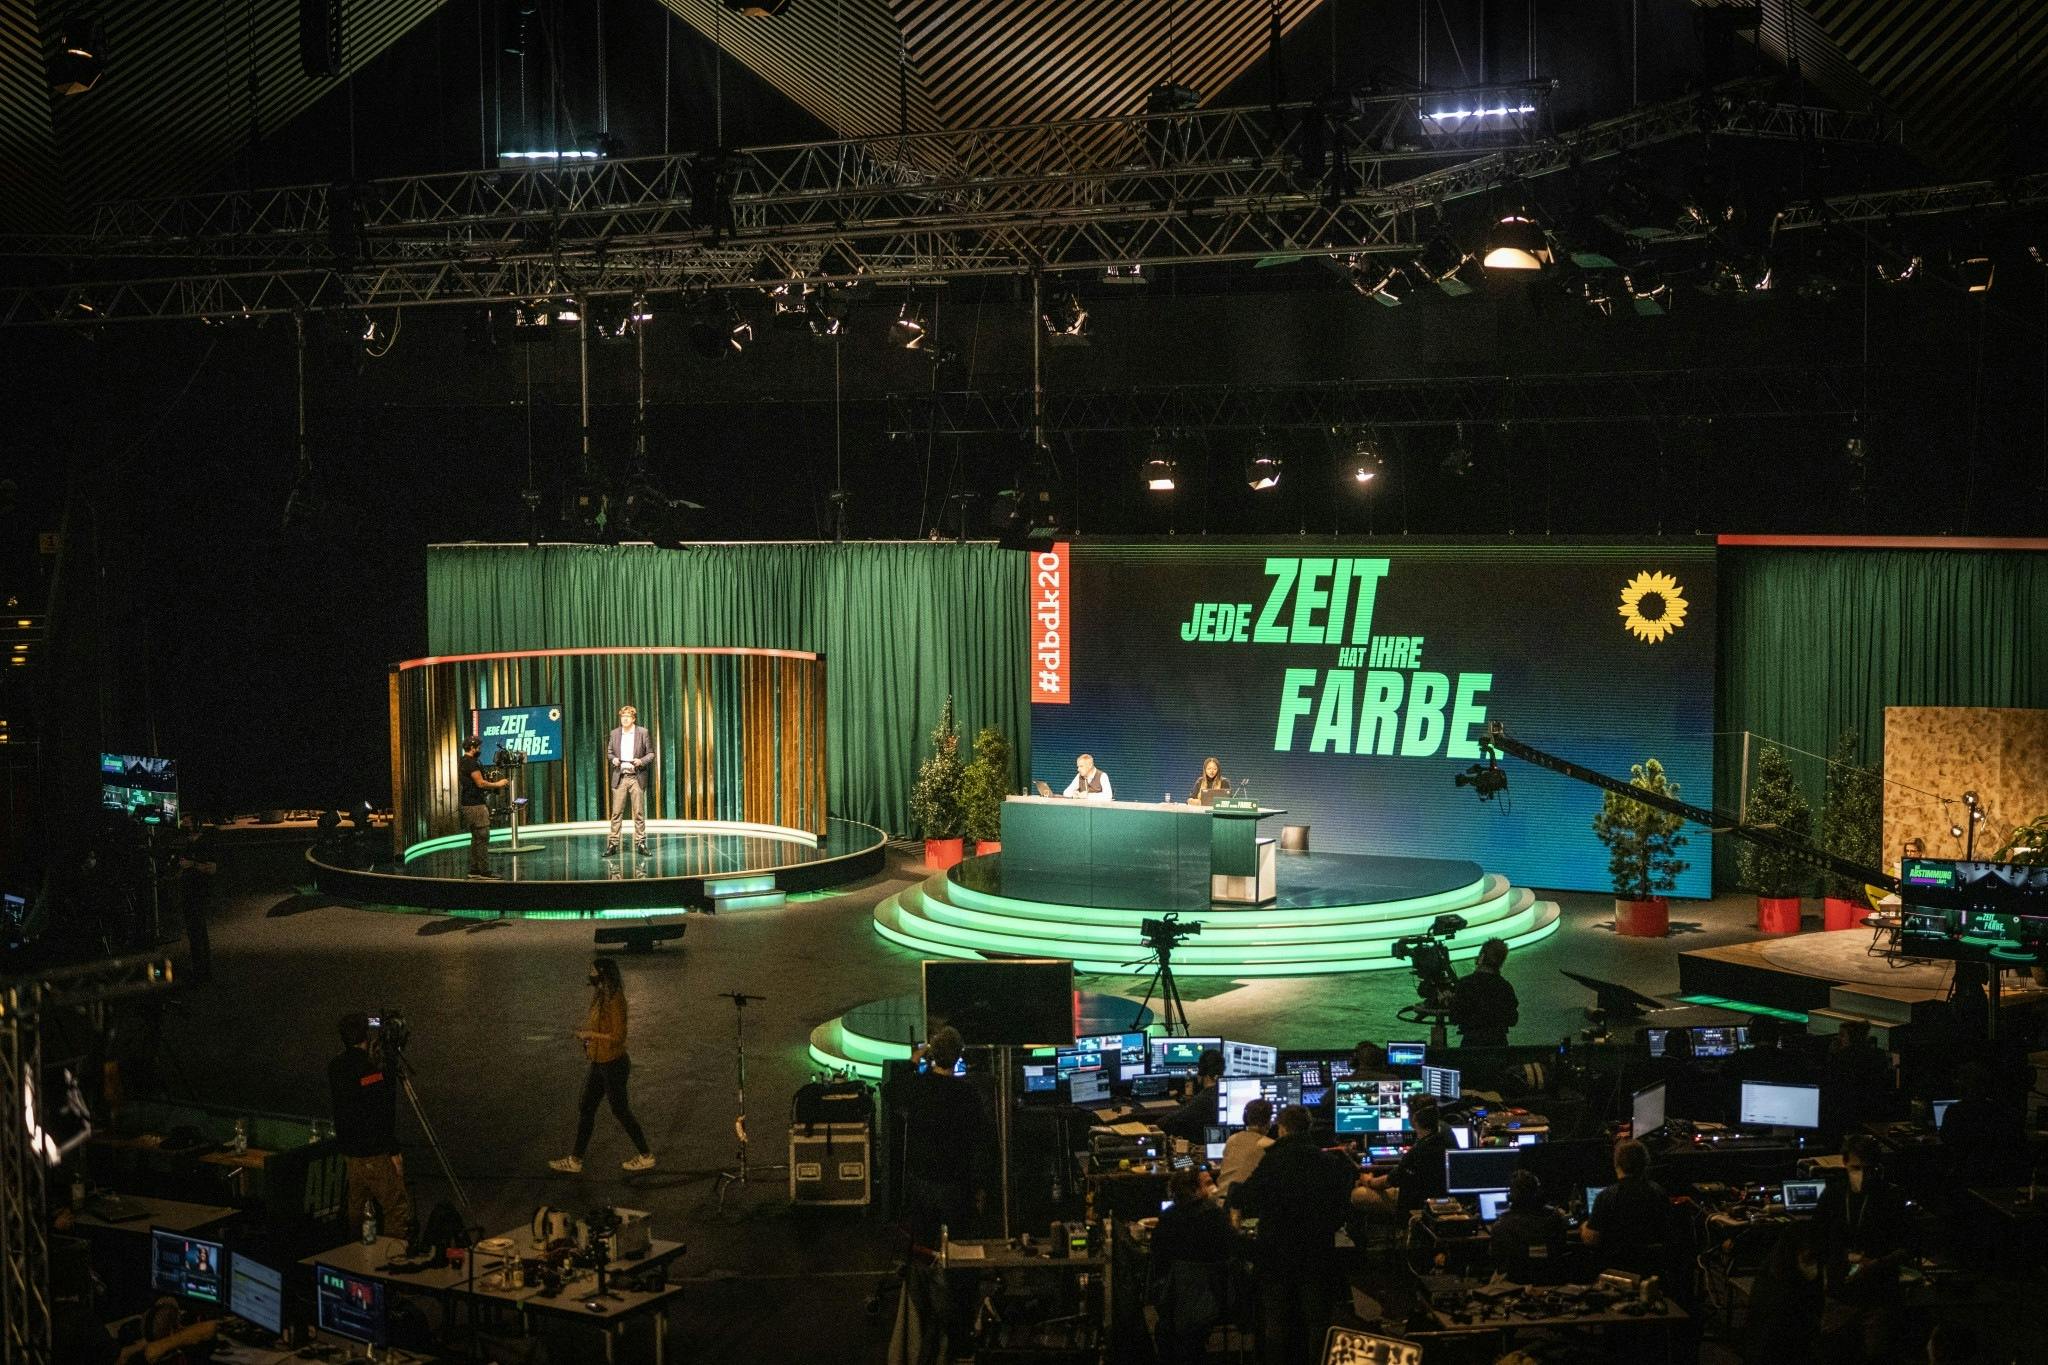 Der Innenraum des Berliner Tempodroms mit einer Bühne mit mehreren Bühnen mit grüner Beleuchtung, im Hintergrund der Schriftzug in Grün: Jede Zeit hat ihre Farbe